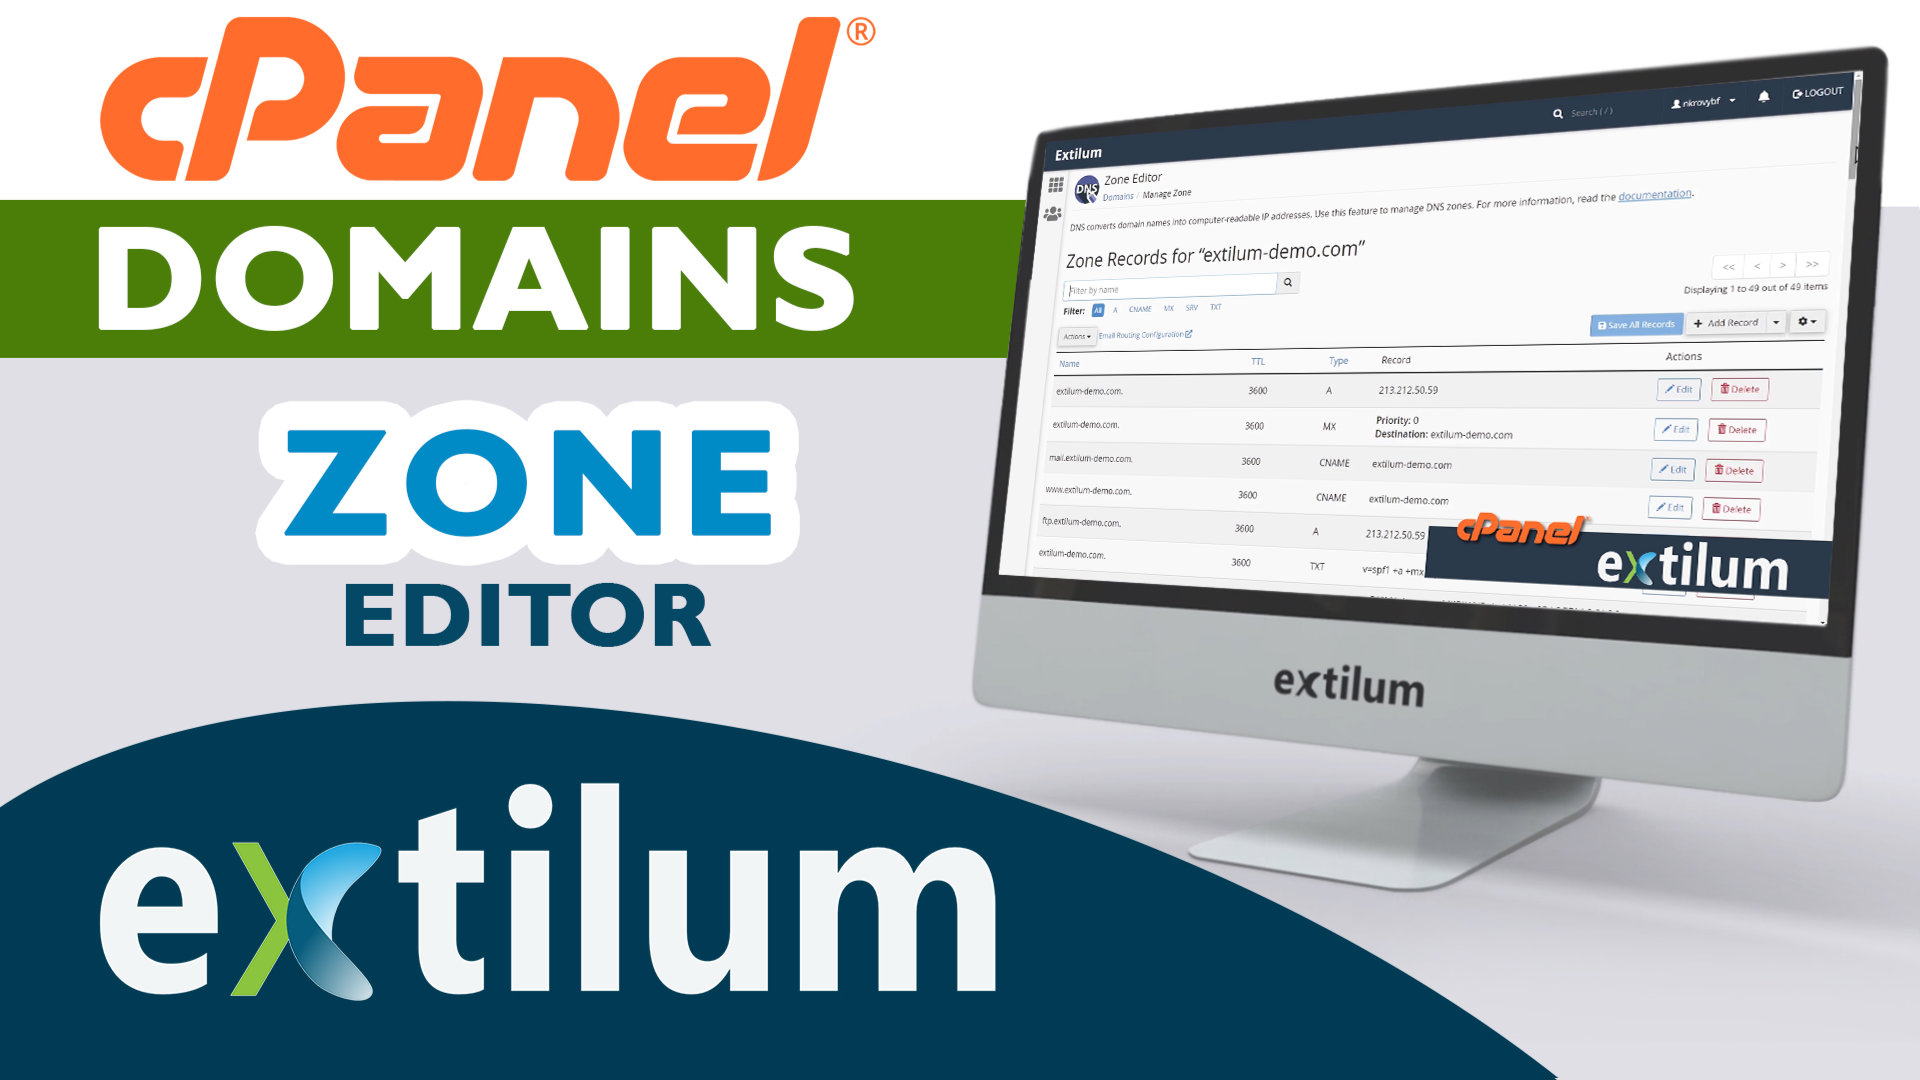 Extilum cpanel - Domains - Zone Editor